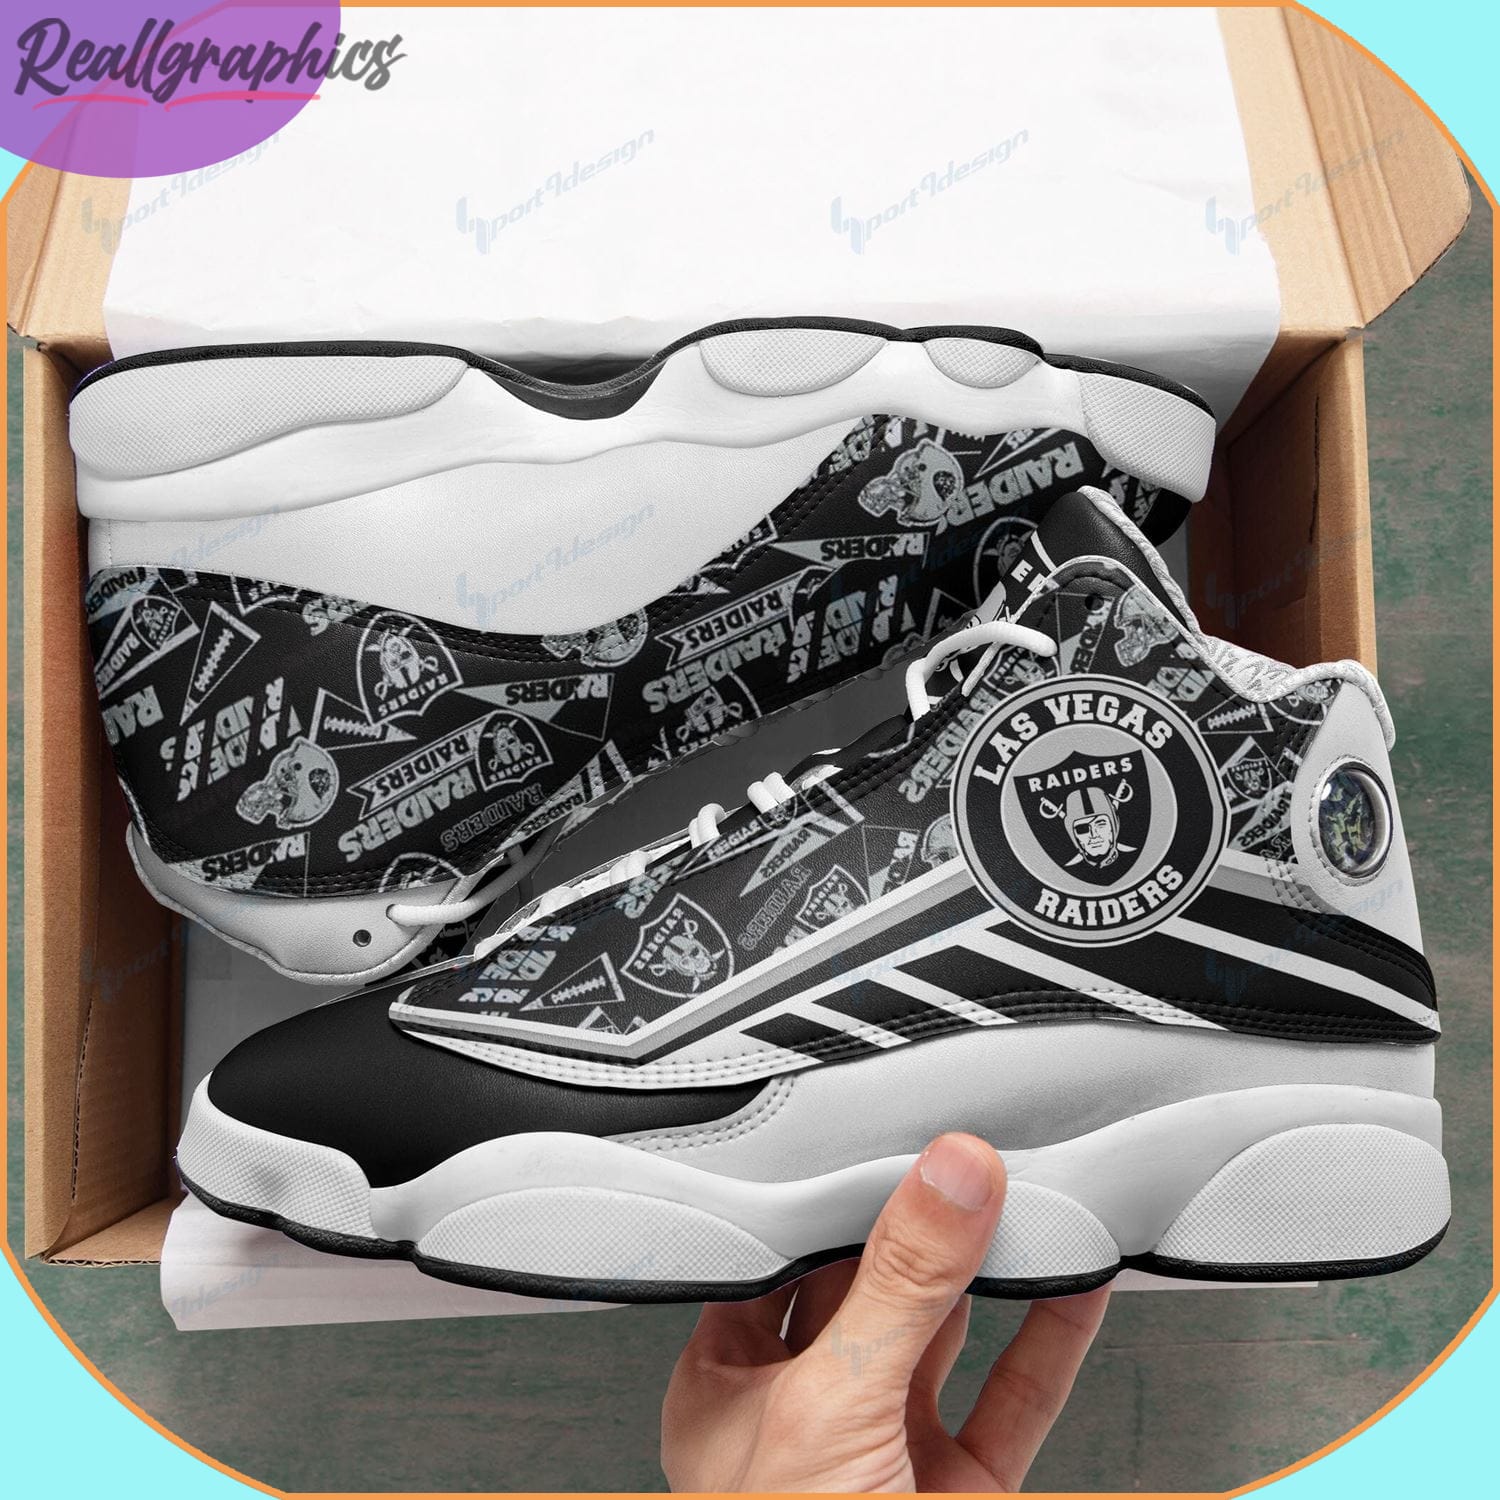 Las Vegas Raiders Air Jordan 13 Sneakers - Reallgraphics